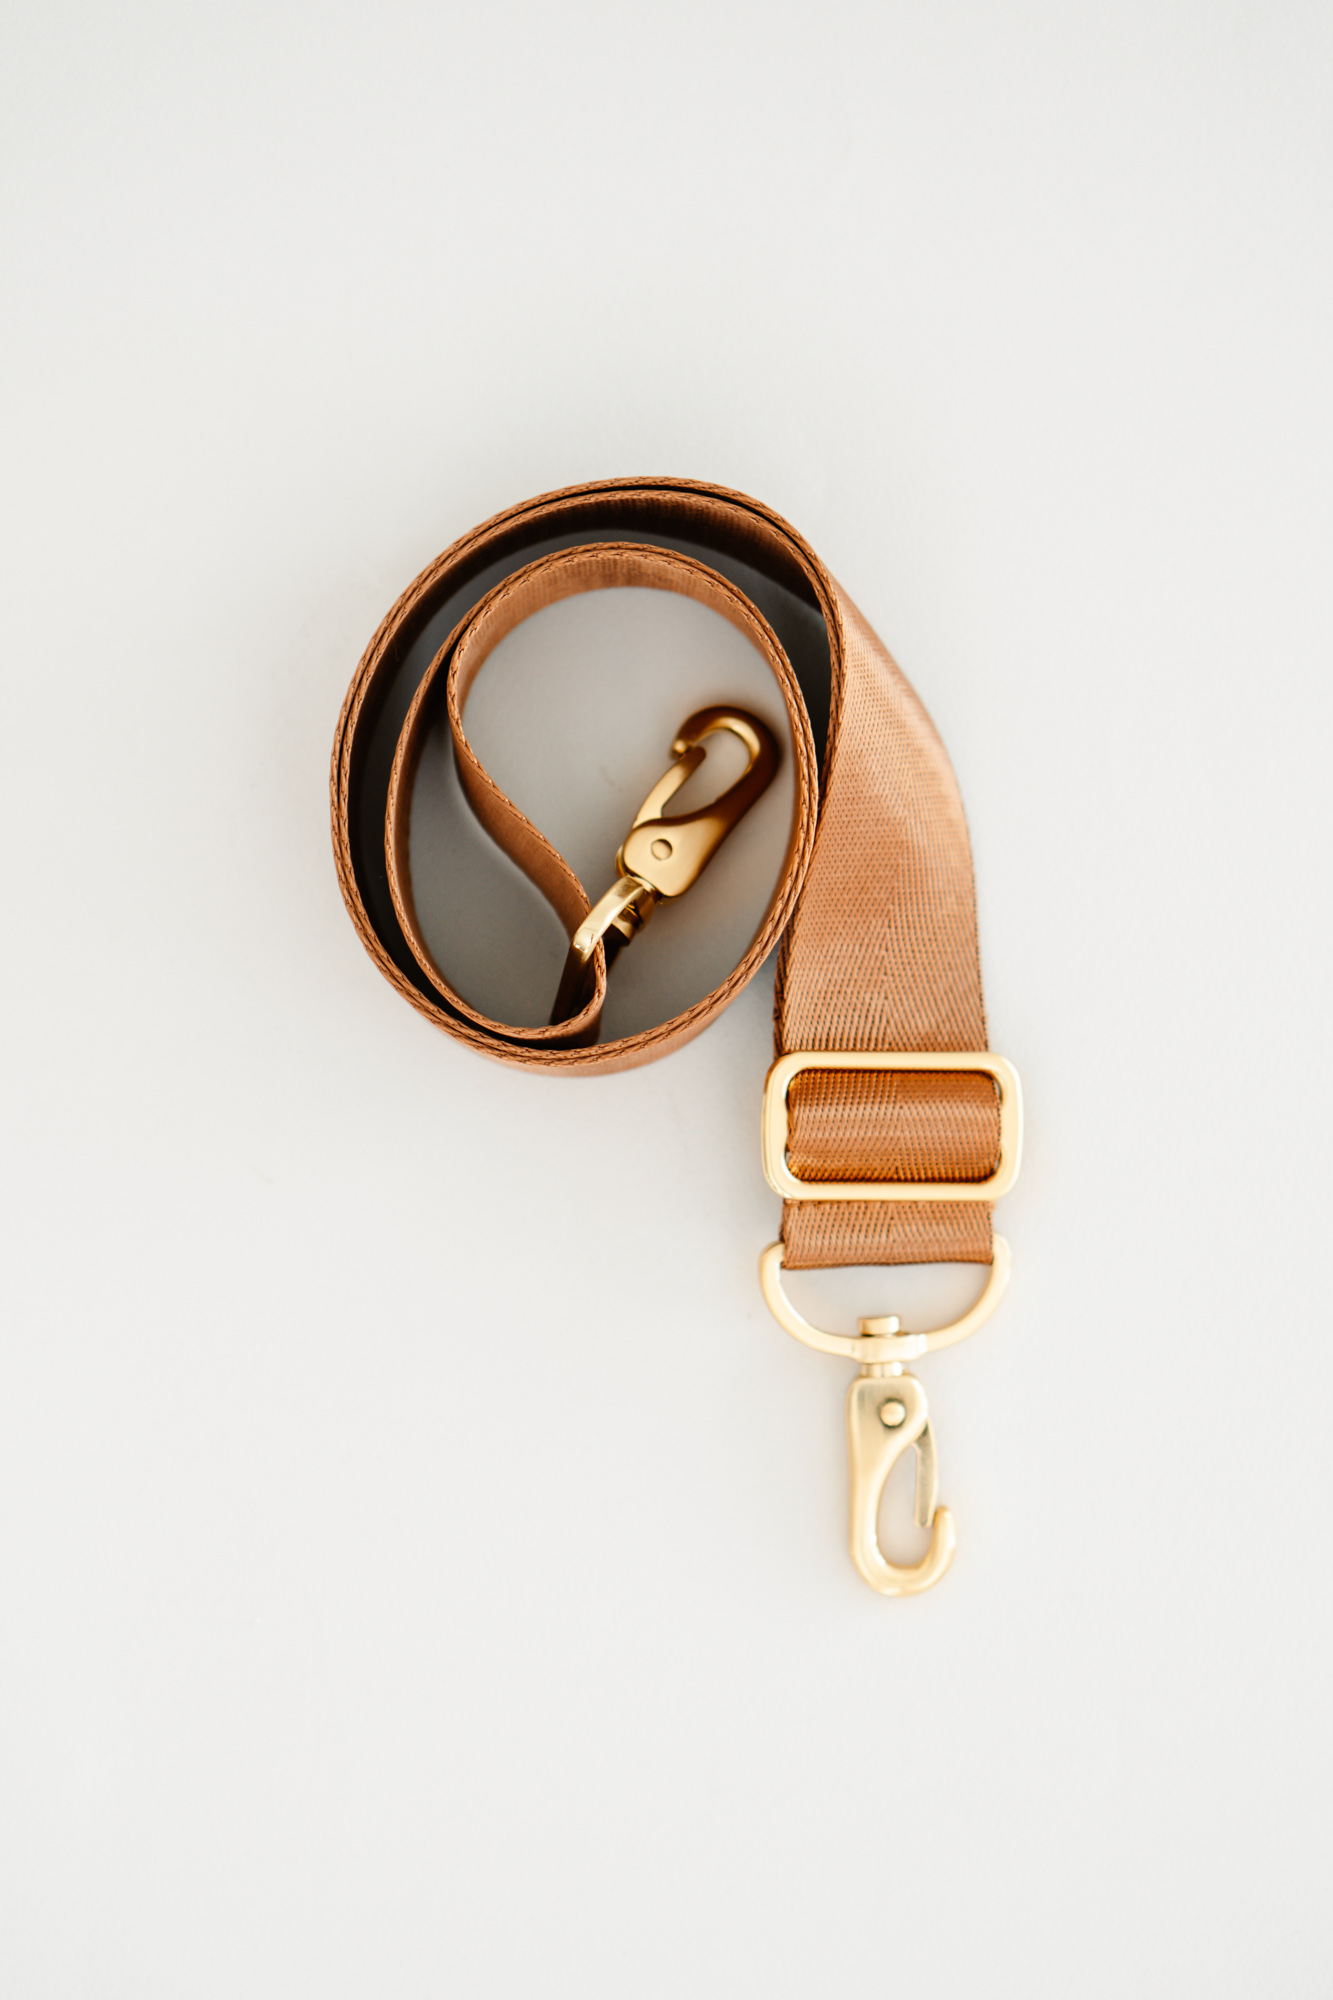 Removable bag strap belt for camera fanny packs gold cognac